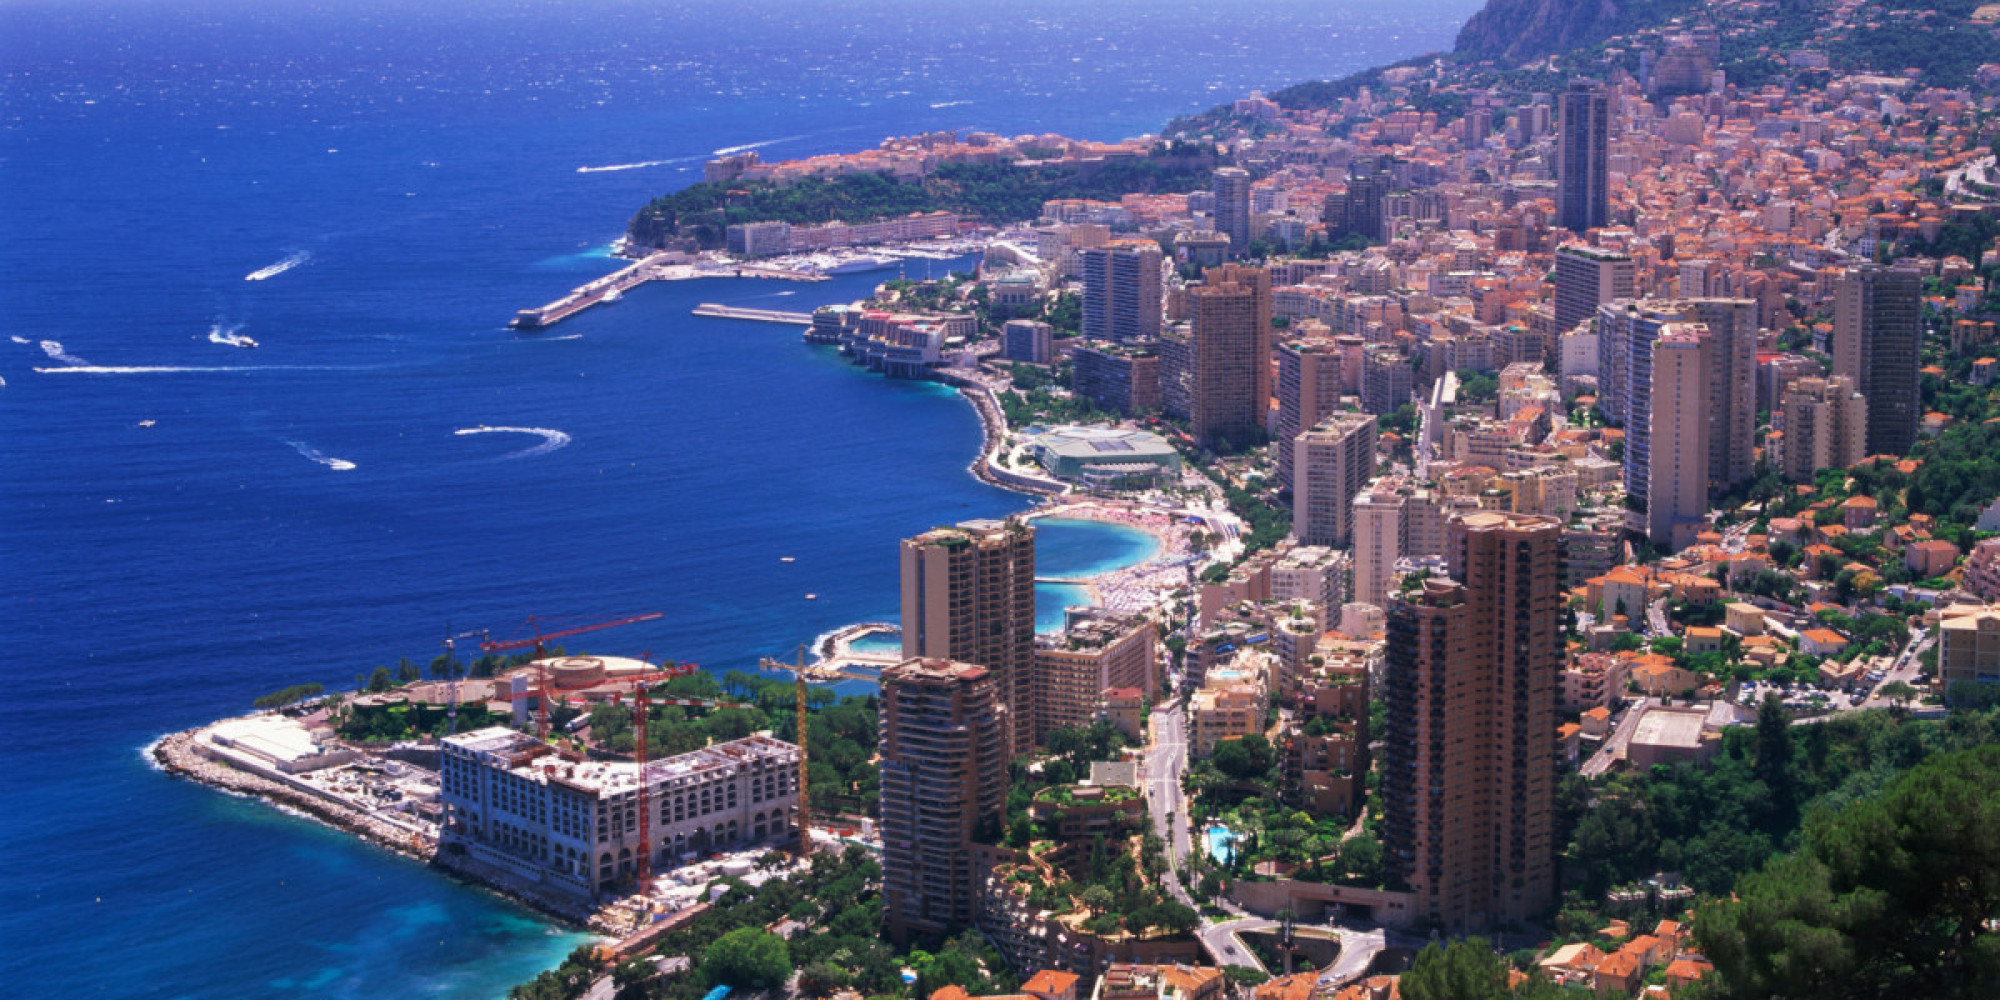 Le budget de Monaco plombé suite à une décision de justice – Noblesse